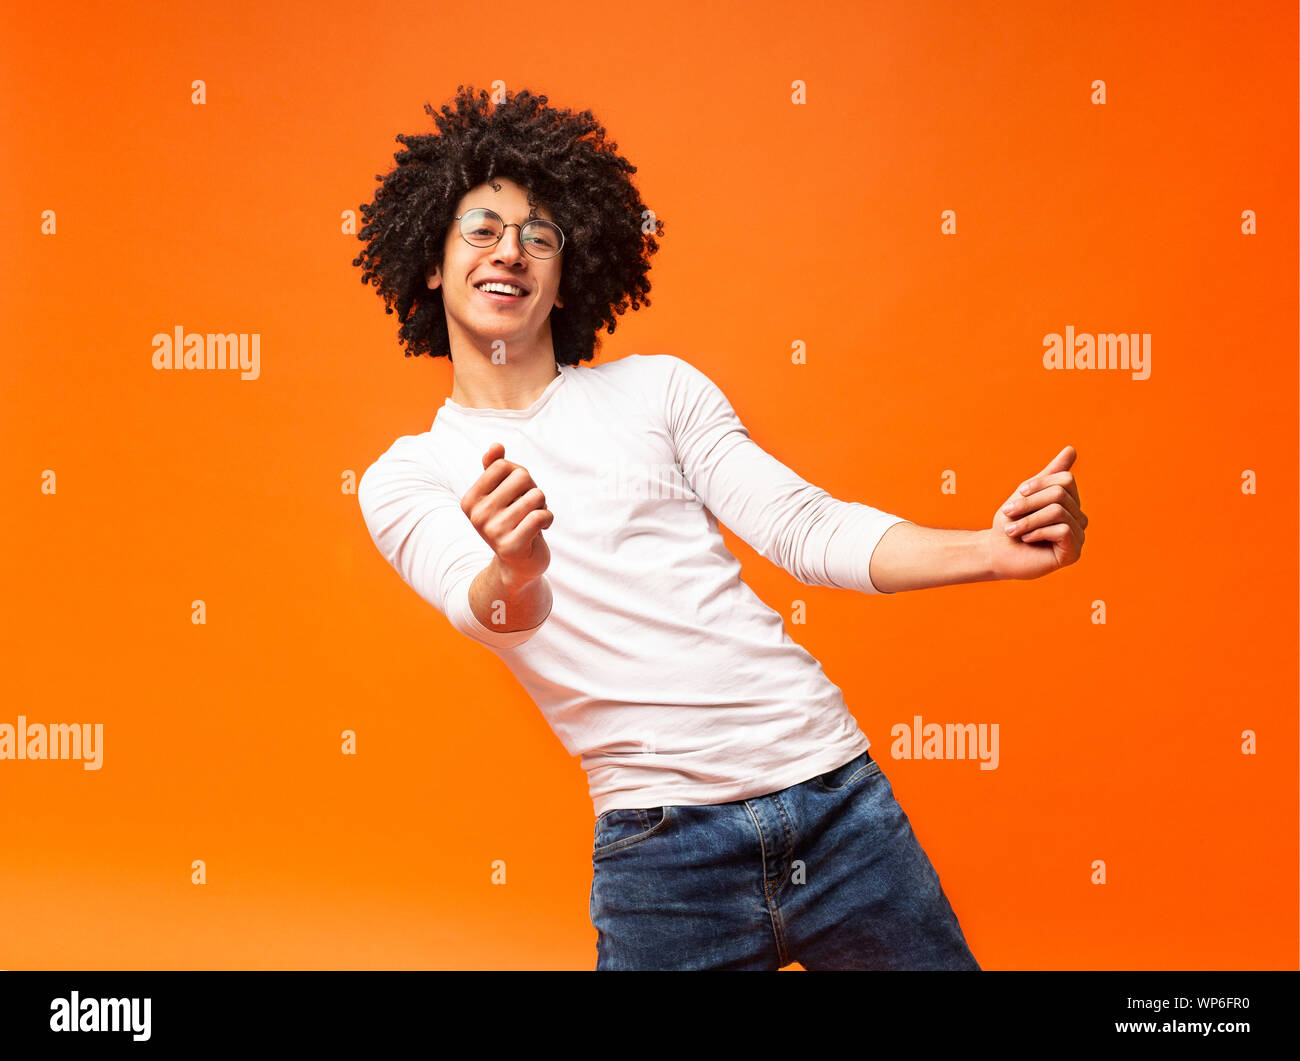 Awesome bushy guy dancing club moves on orange background Stock Photo